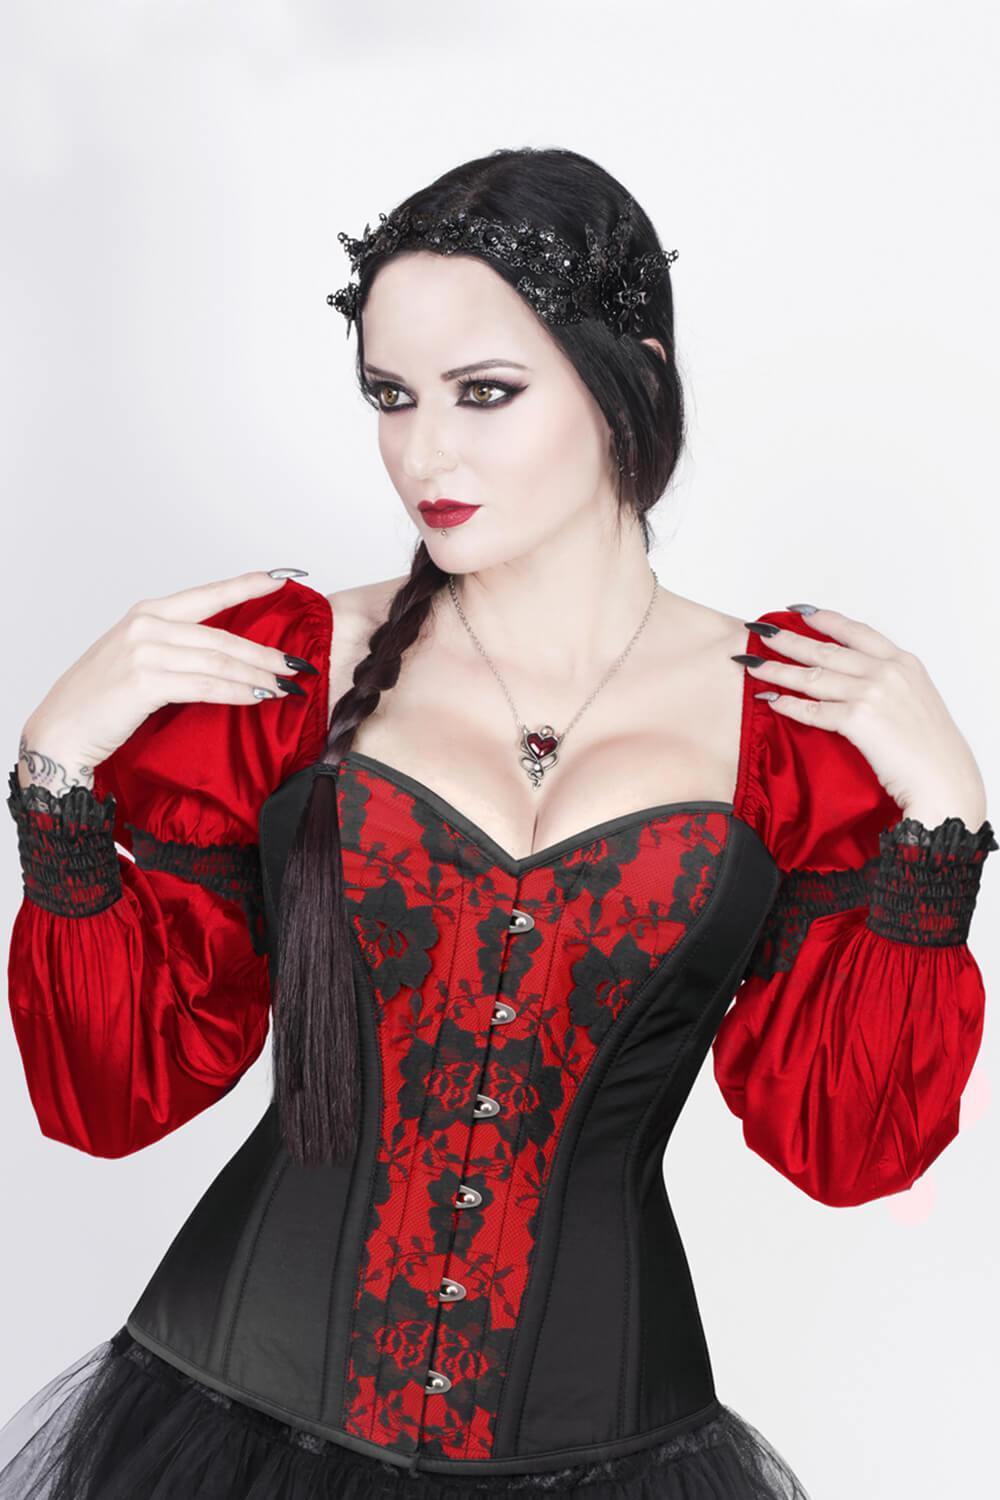 https://www.corsetdeal.com/cdn/shop/products/VG-19497_F_c95a2521-8deb-4194-9ce2-f20a75438409.jpg?v=1582012233